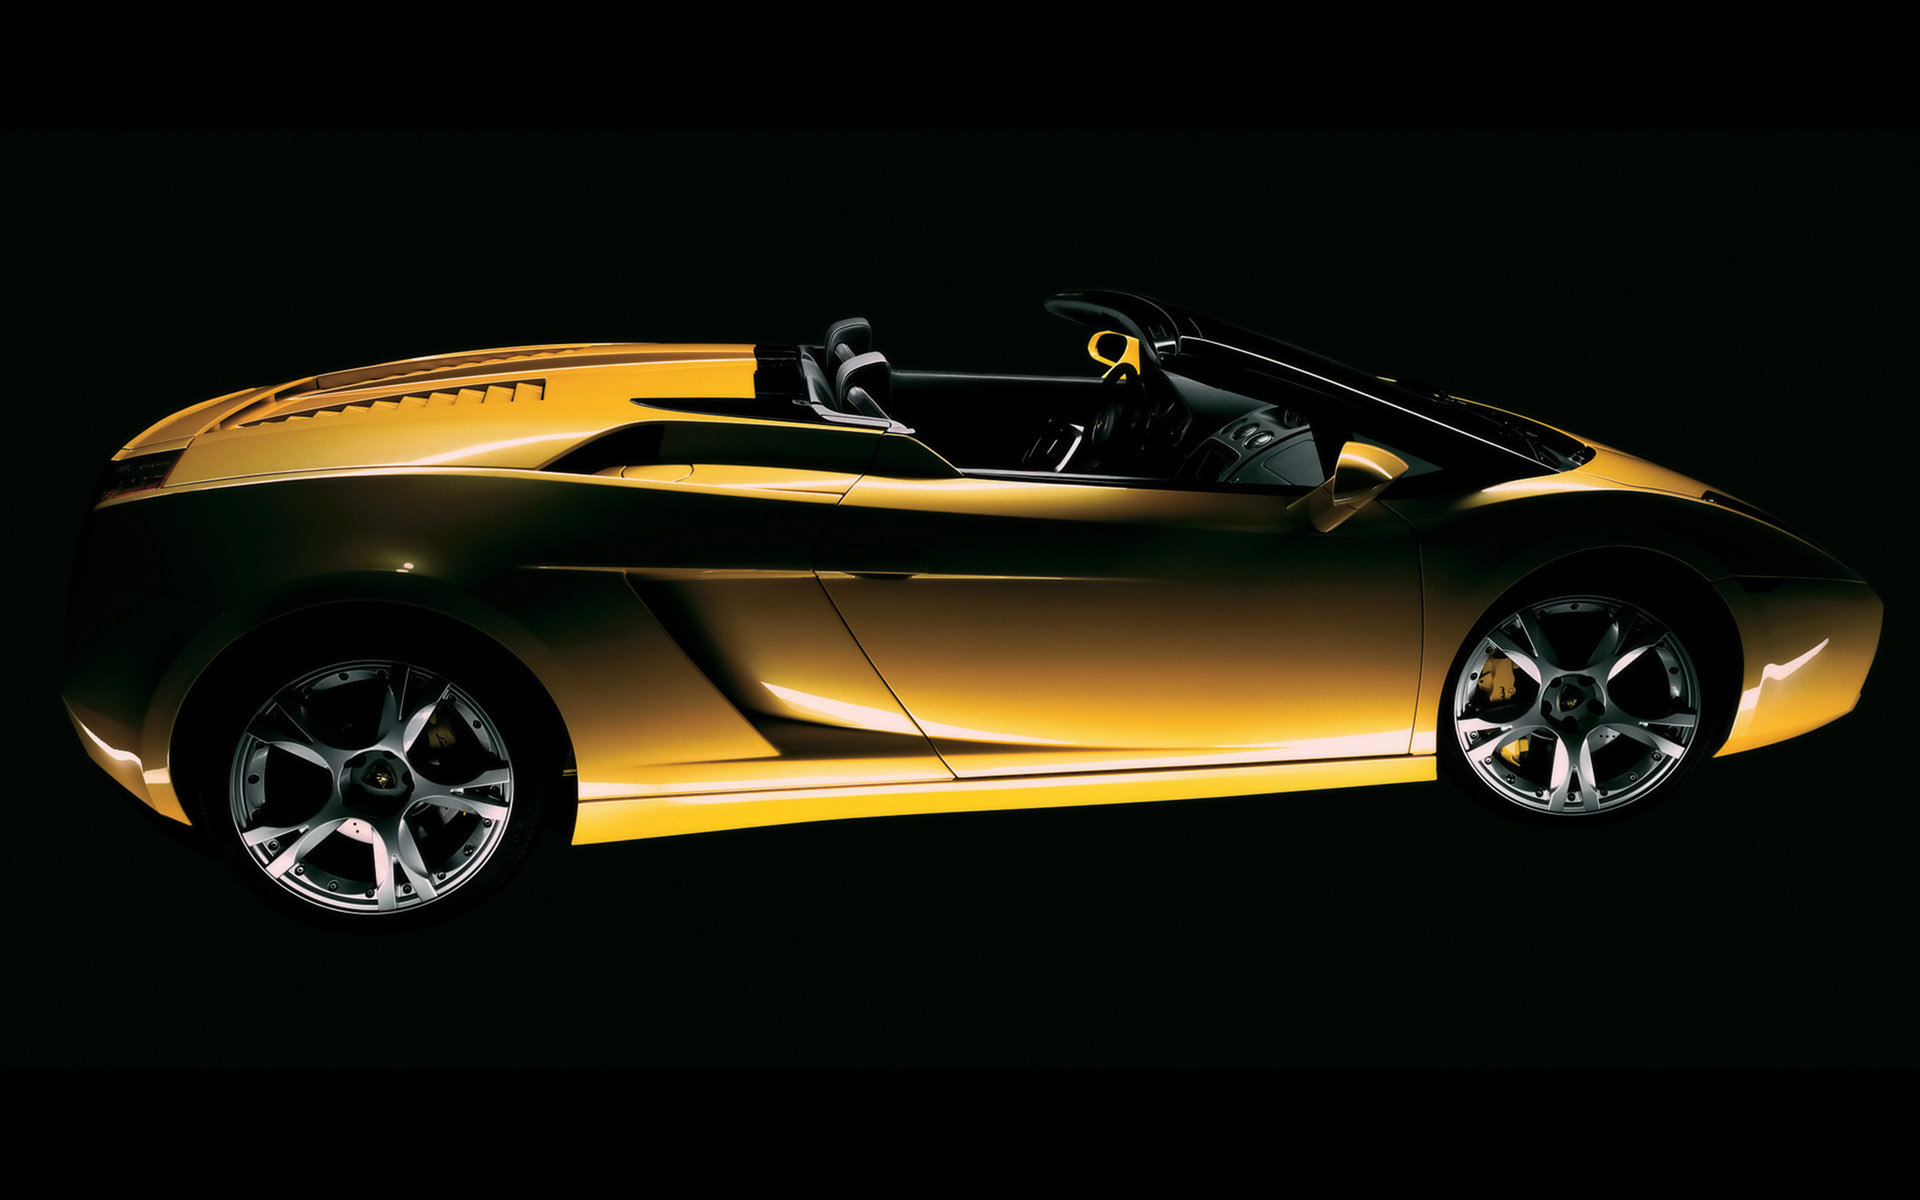 автомобили, транспортные средства, Lamborghini Gallardo, вид сбоку, желтые автомобили, итальянские автомобили - обои на рабочий стол